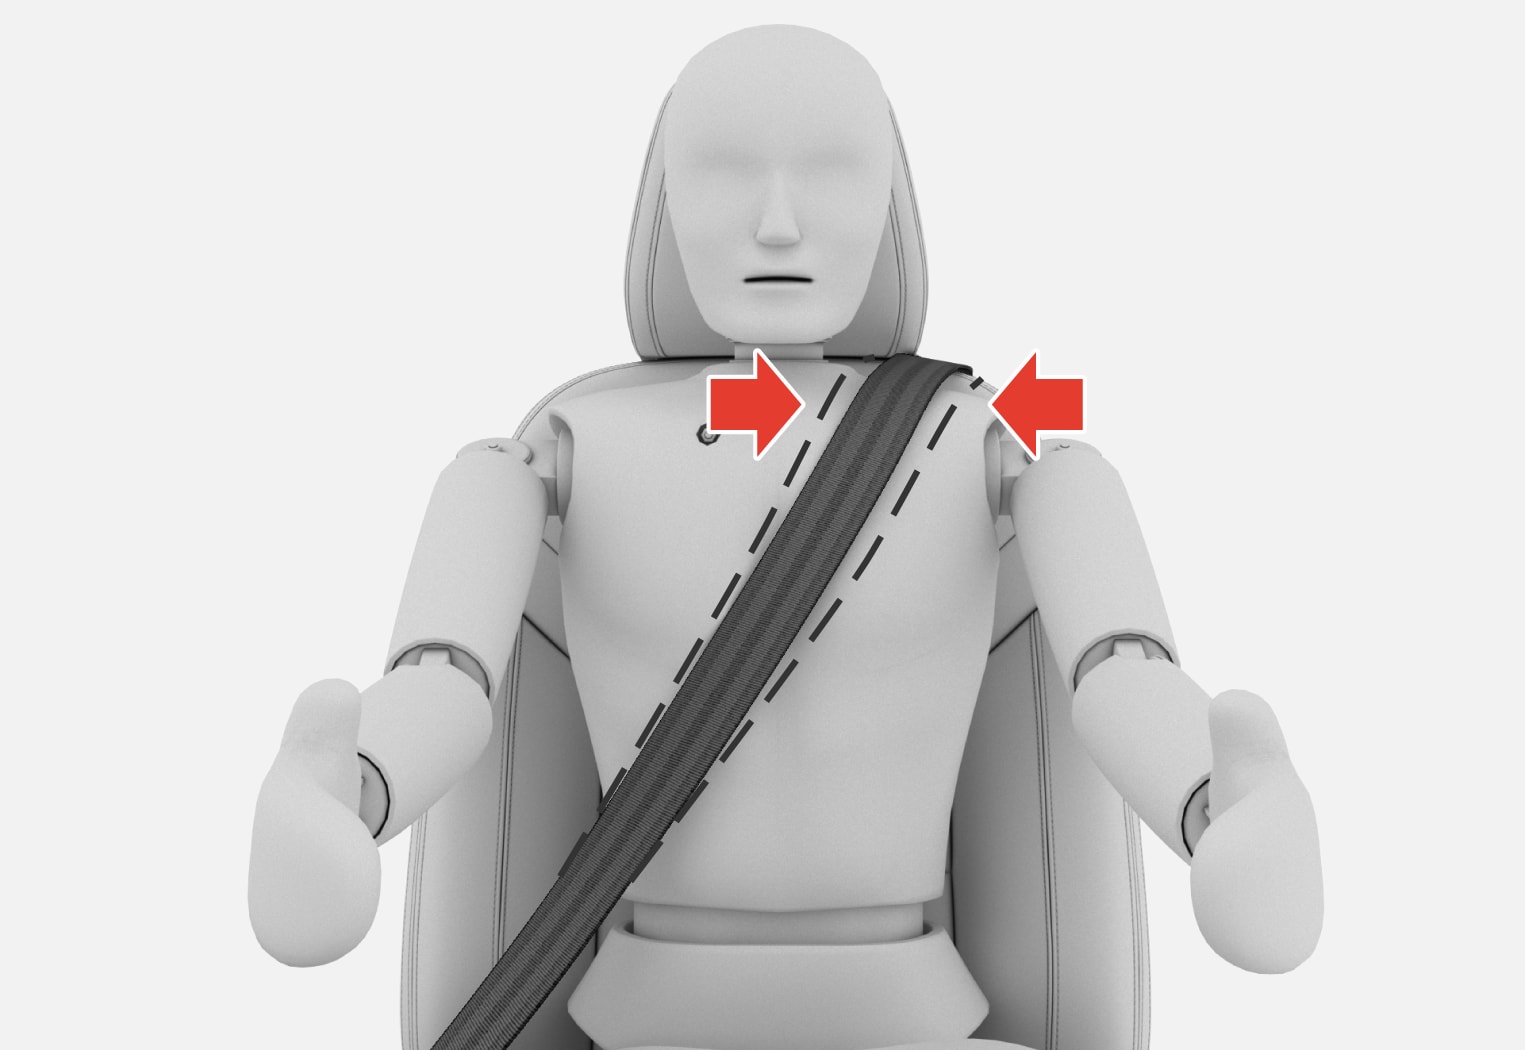 PS-2007-Safety–Seat belt over shoulder